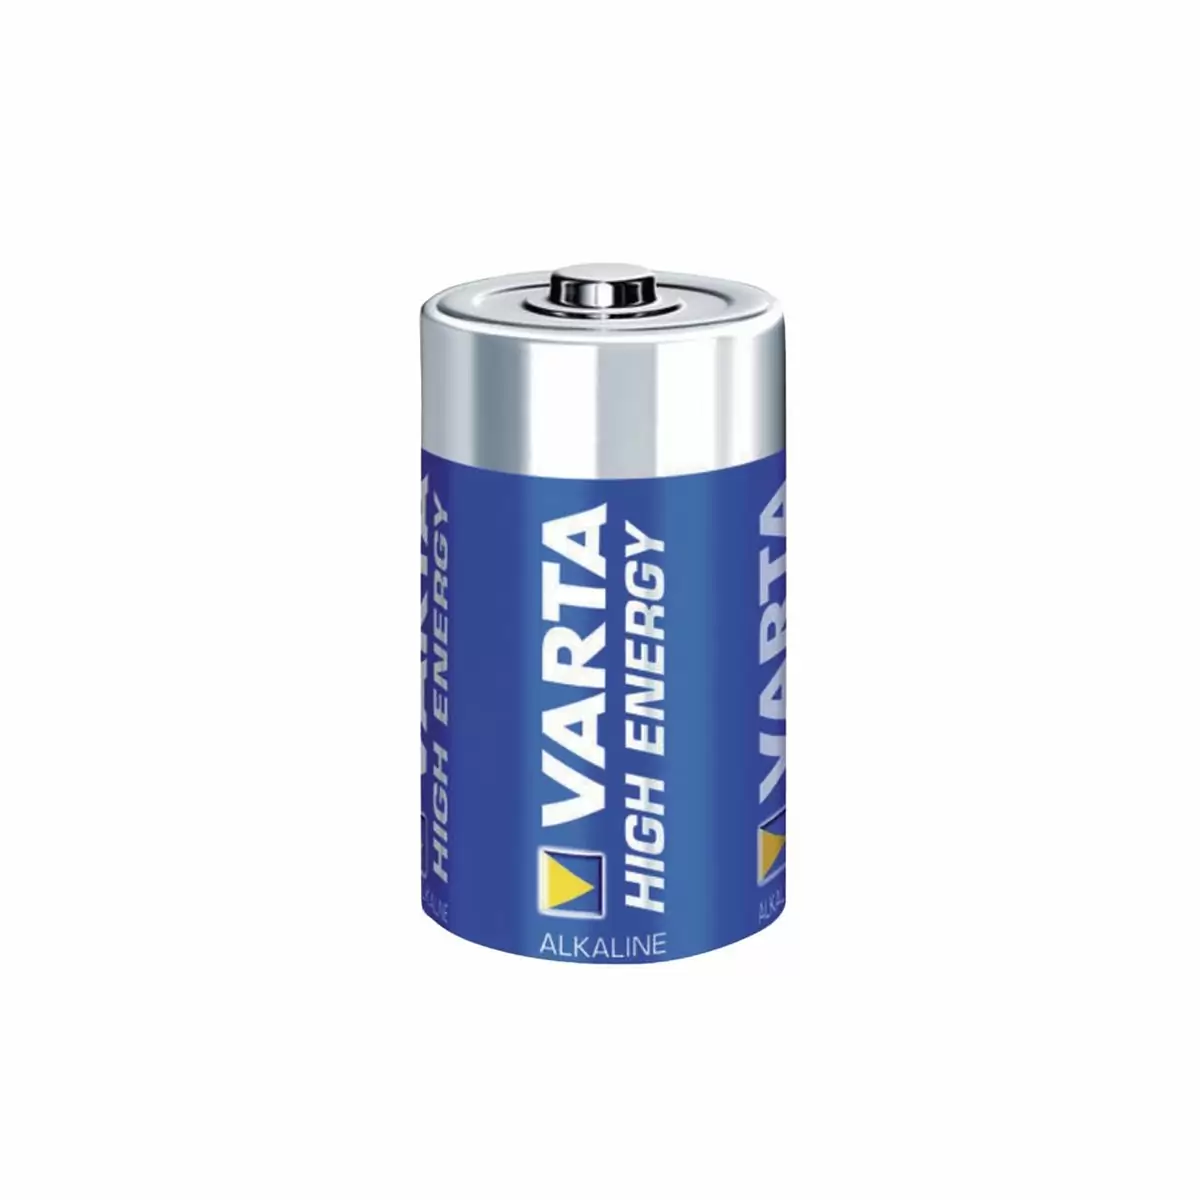 batería alcalina hugh energía lr14 - image